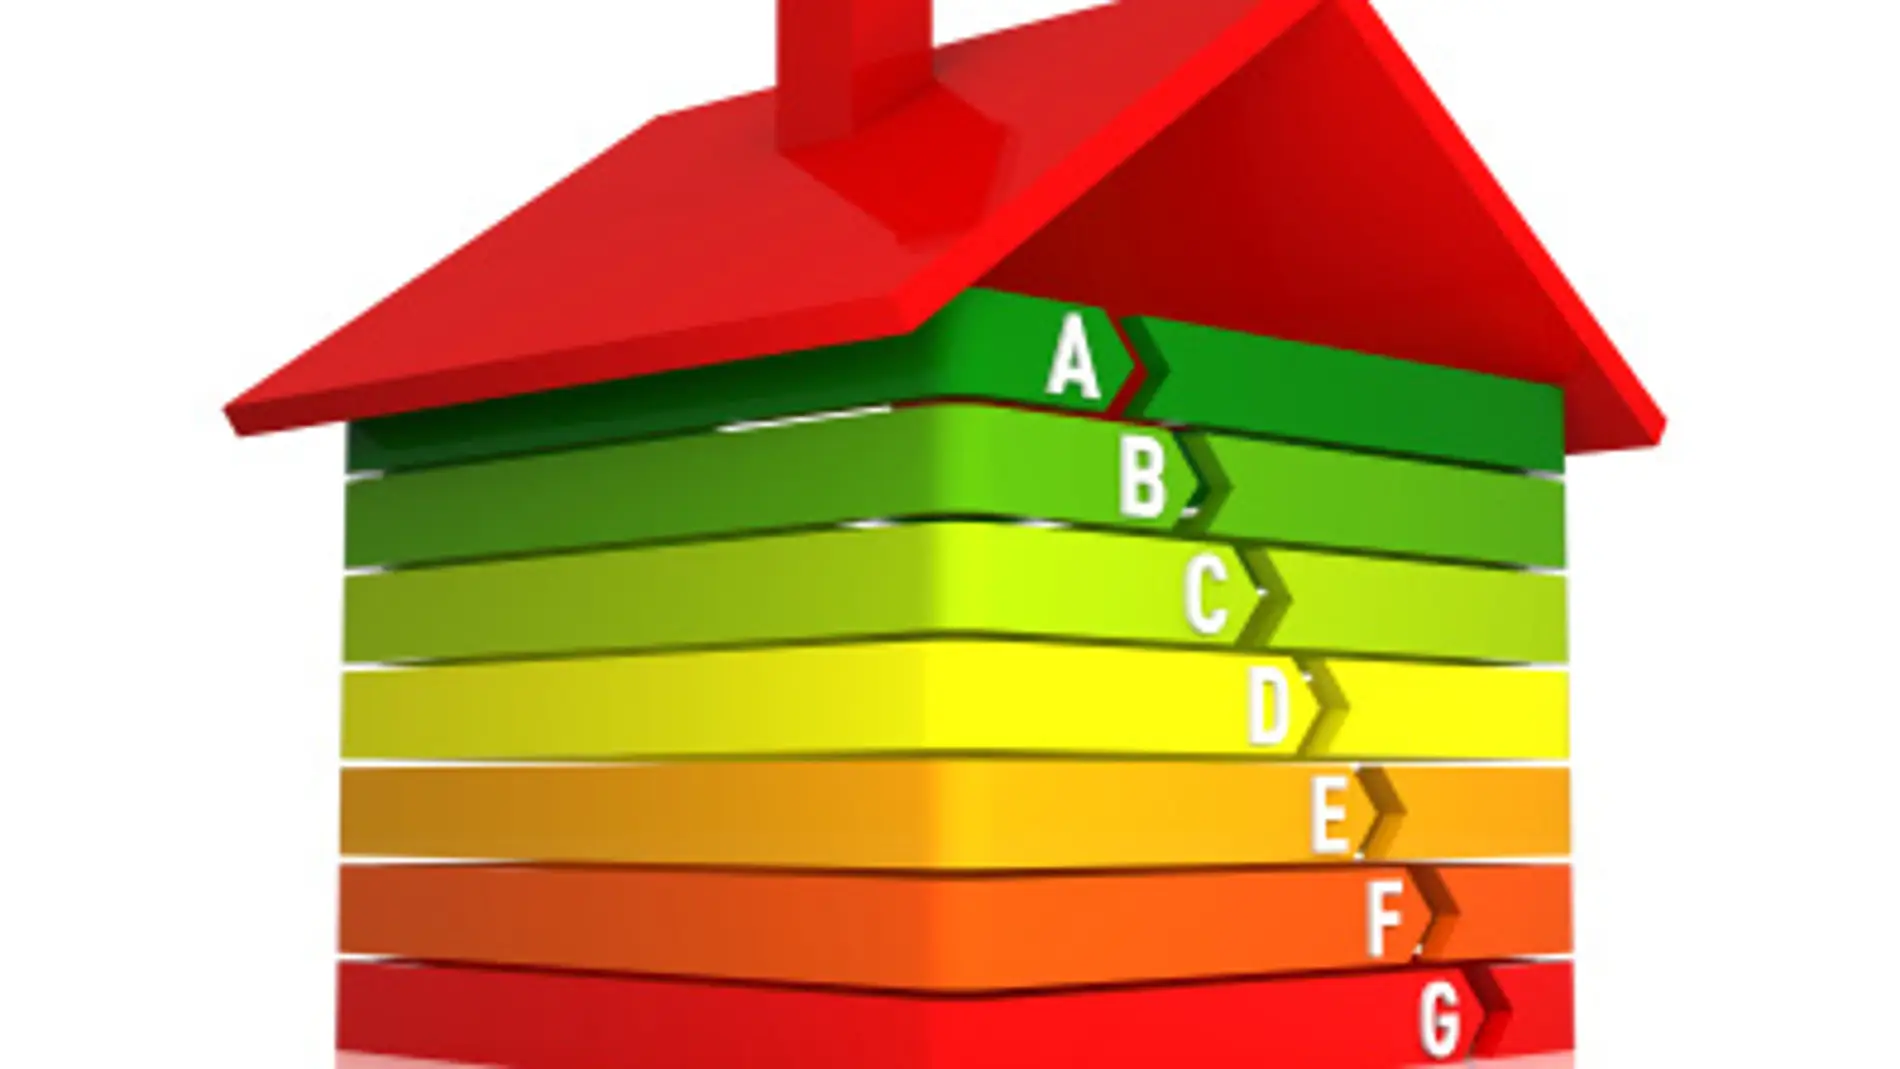 La rehabilitación de viviendas, clave para su eficiencia energética